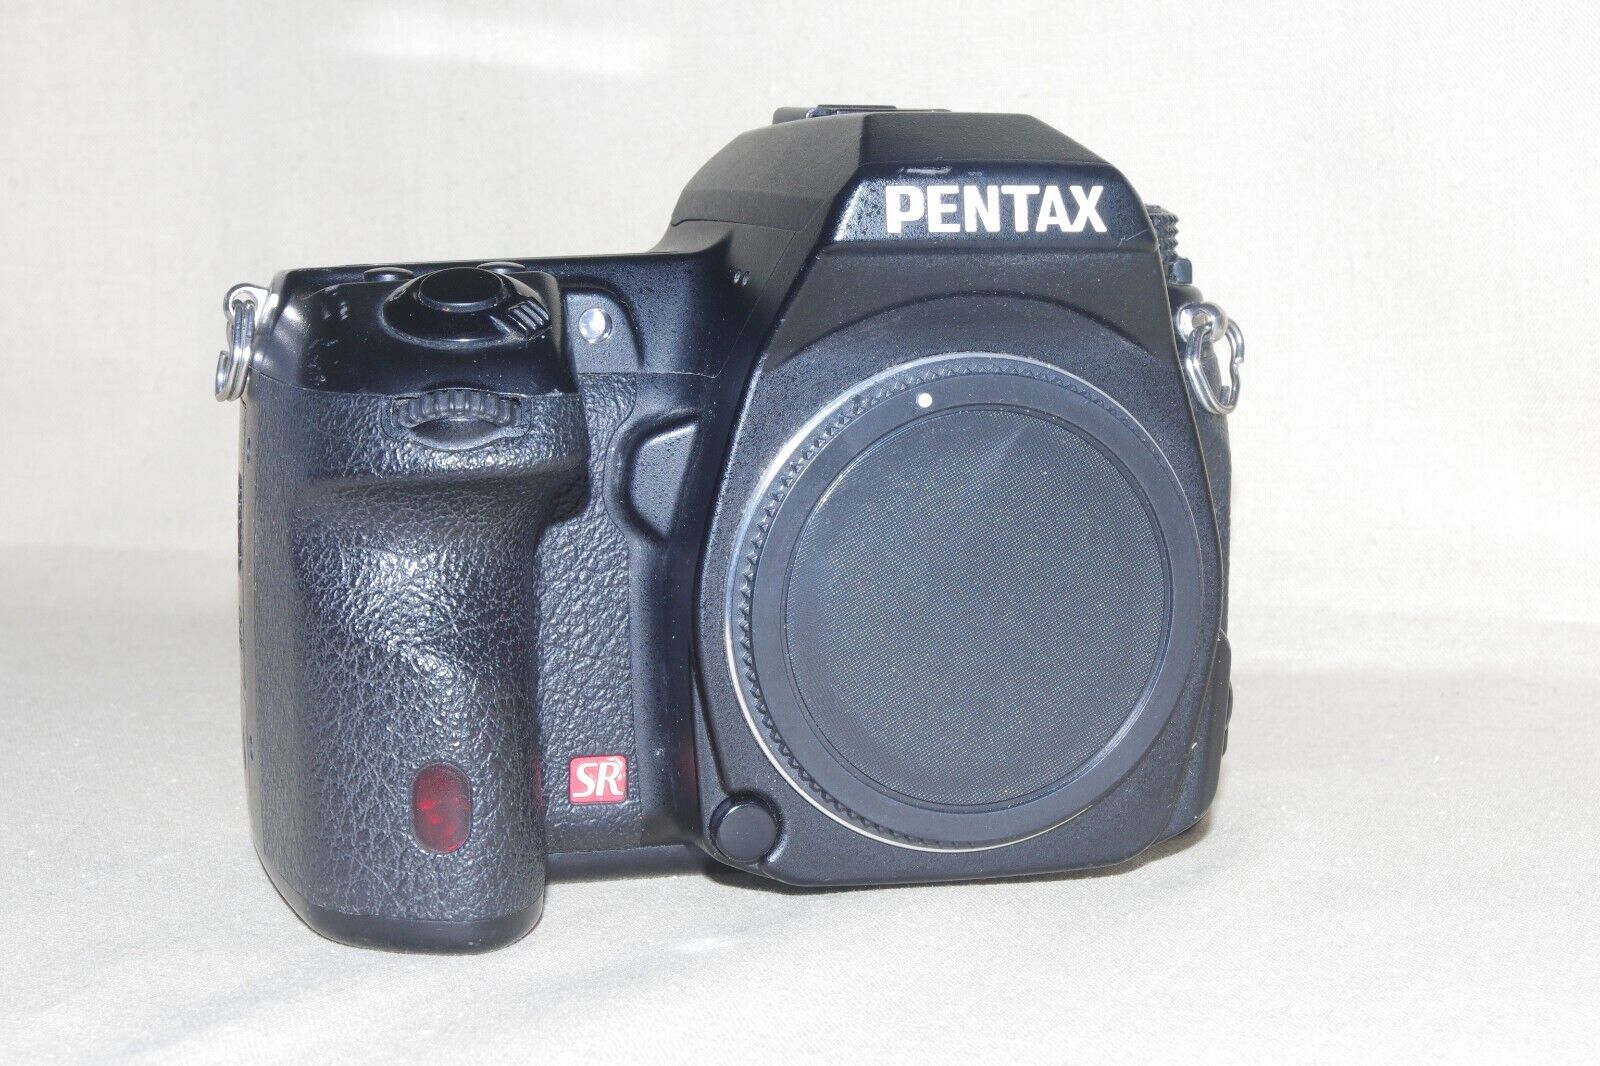 Excellent/Mint K-5 Pentax Digital SLR Body, Batter, Charger, 60 Day Free Return